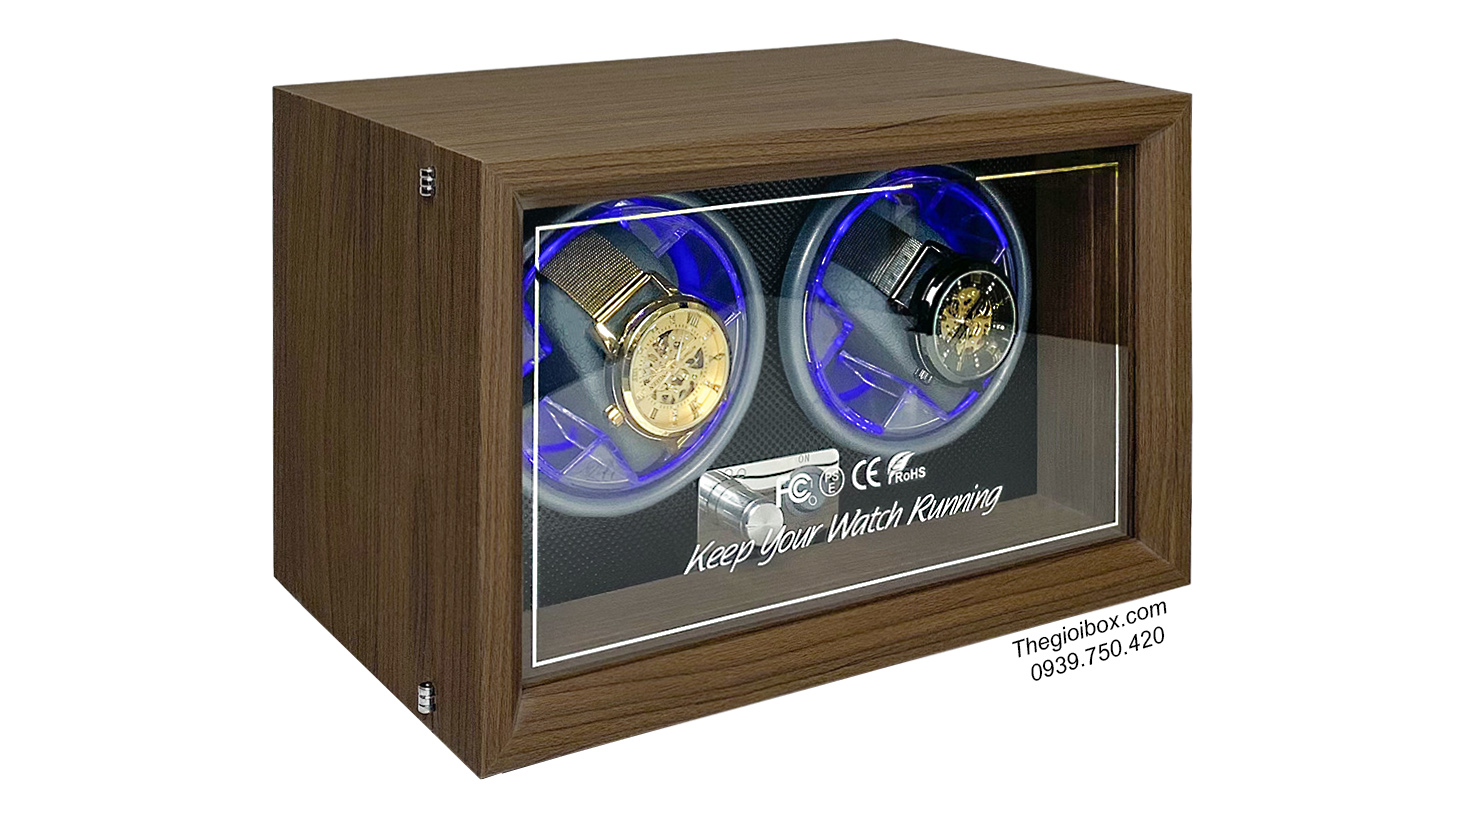 Tủ xoay đồng hồ cơ 2 ngăn vỏ gỗ sần + nội thất nhựa cứng vân kim cương đen có đèn LED